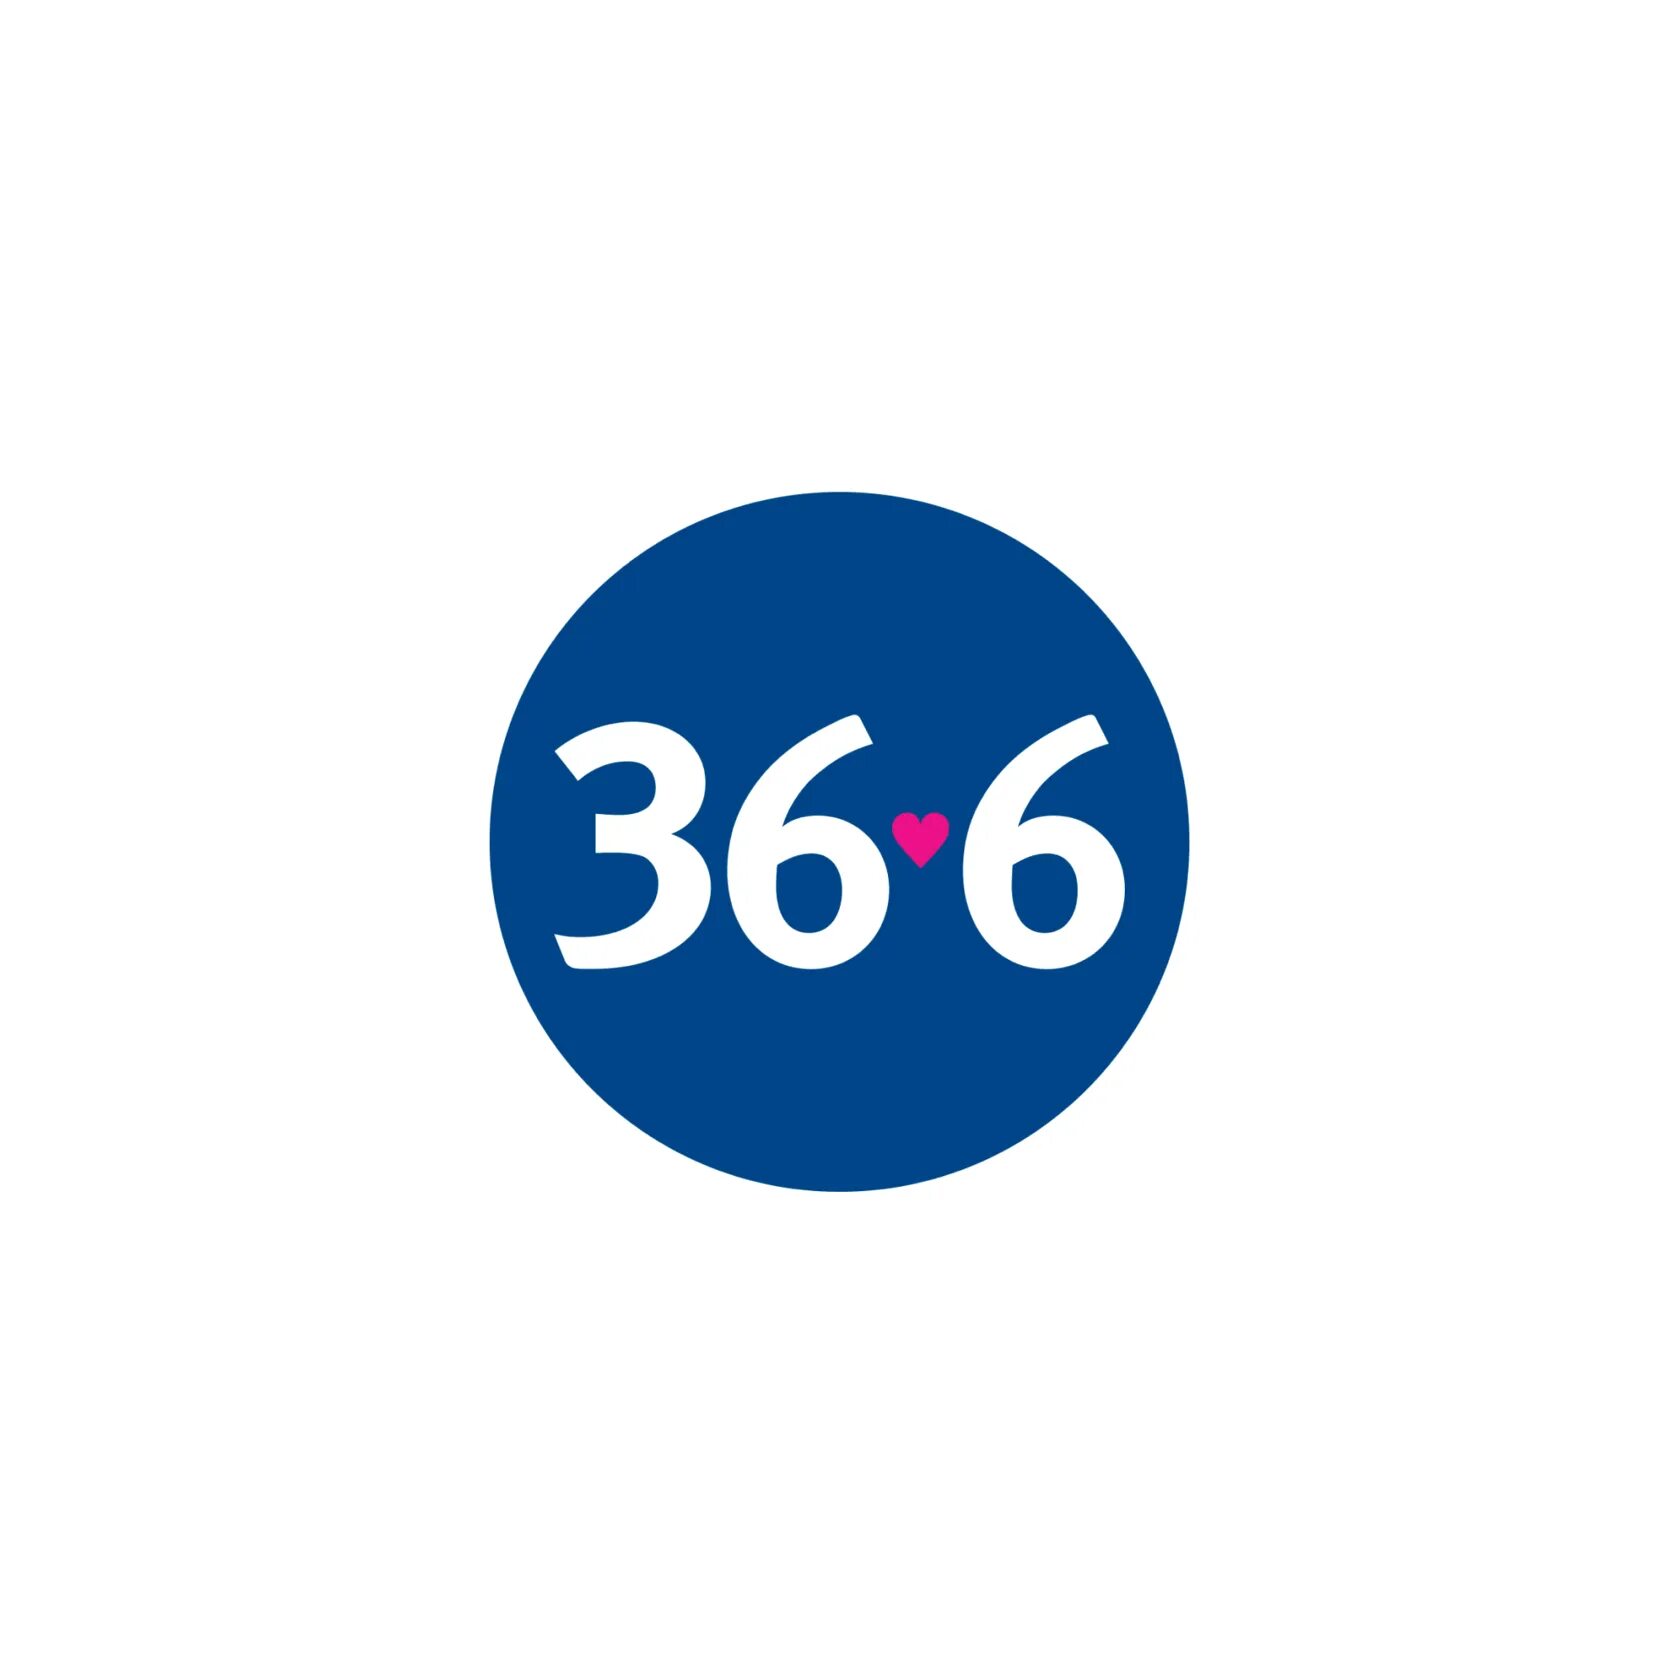 ПАО аптечная сеть 36,6. Логотип 36.6. Аптека 36.6 лого. Аптека логотип аптека 36.6.